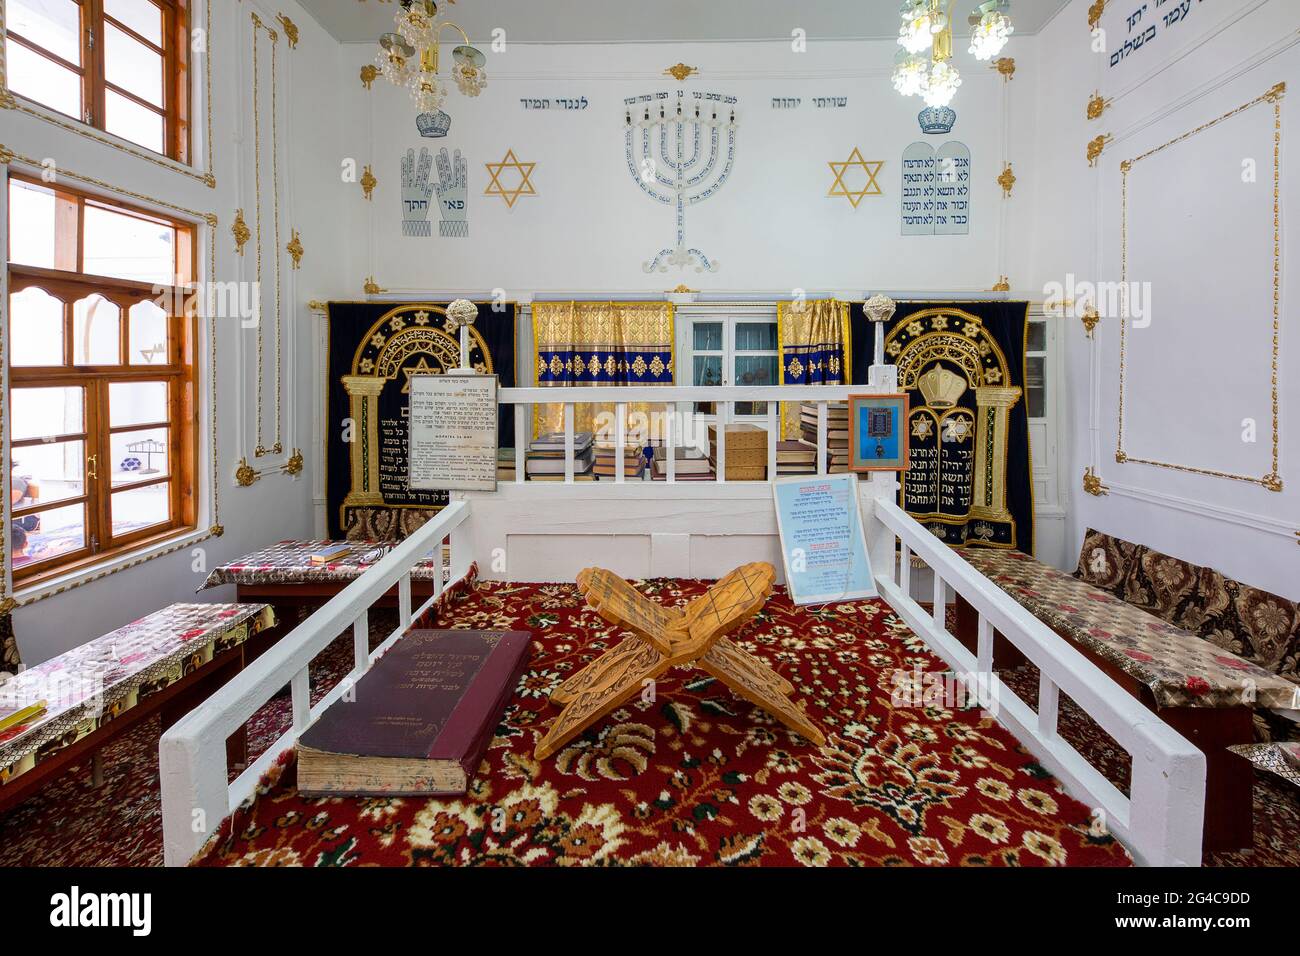 Interior of the Bukhara Synagogue, in Bukhara, Uzbekistan Stock Photo